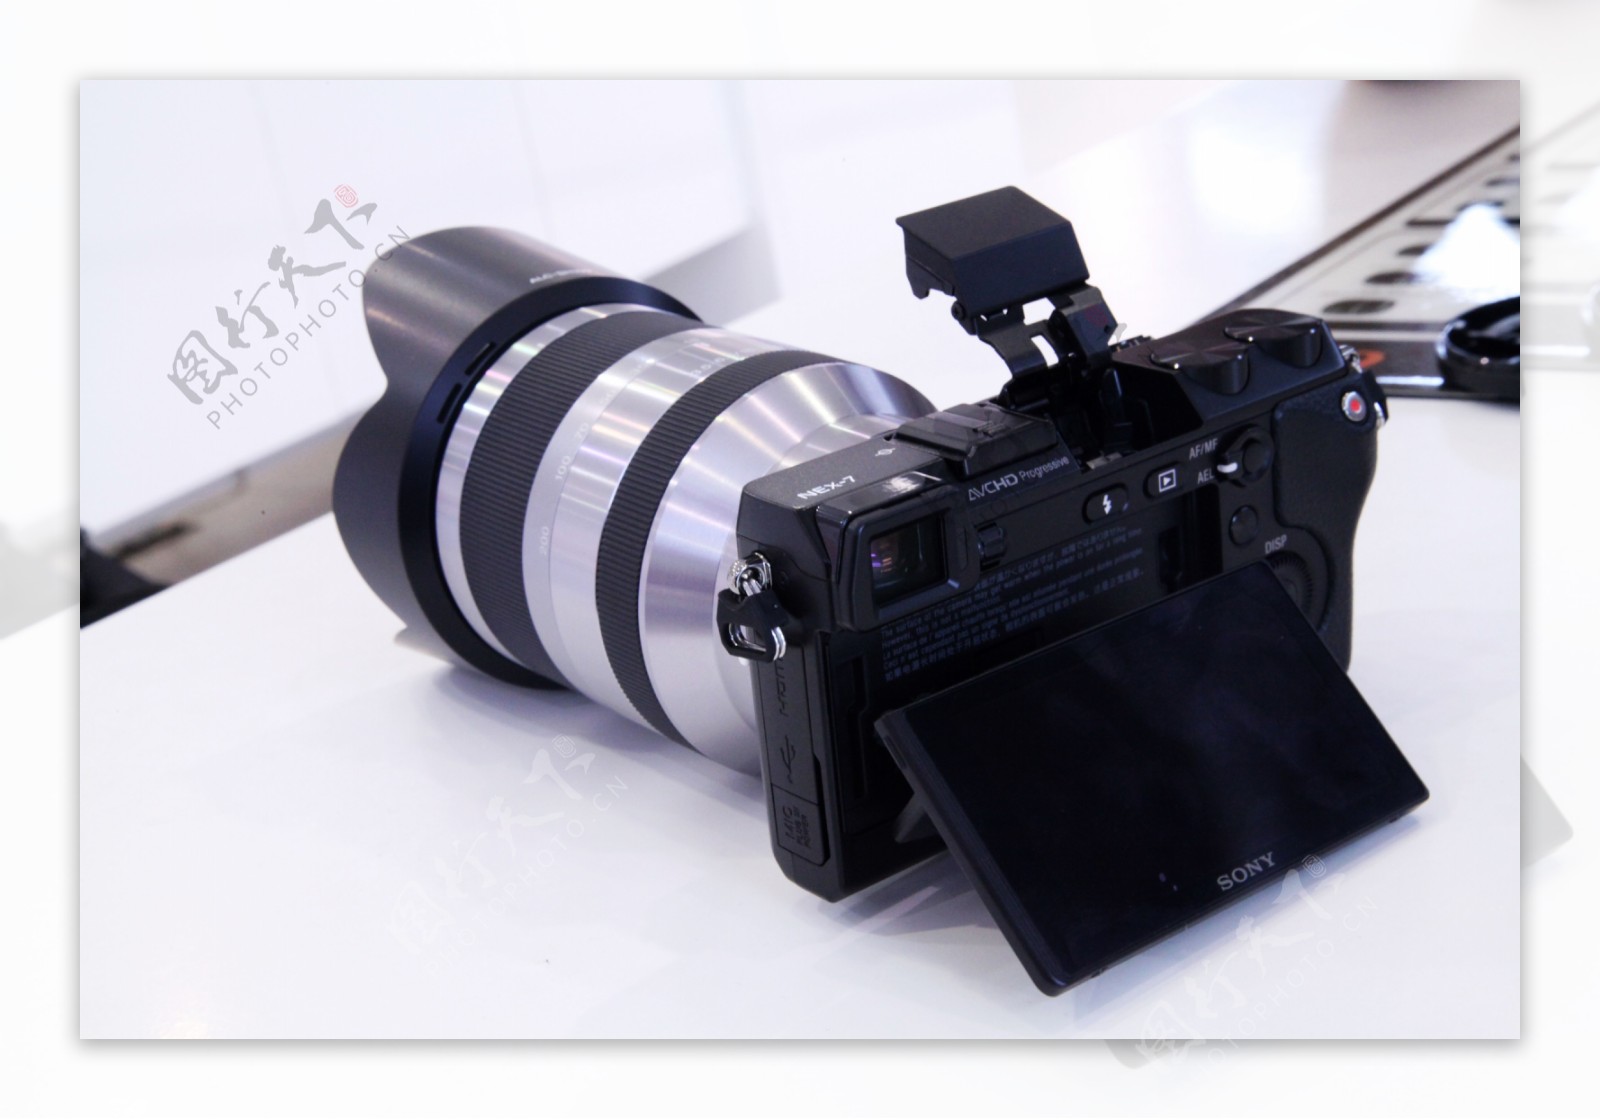 索尼nex7微单相机图片